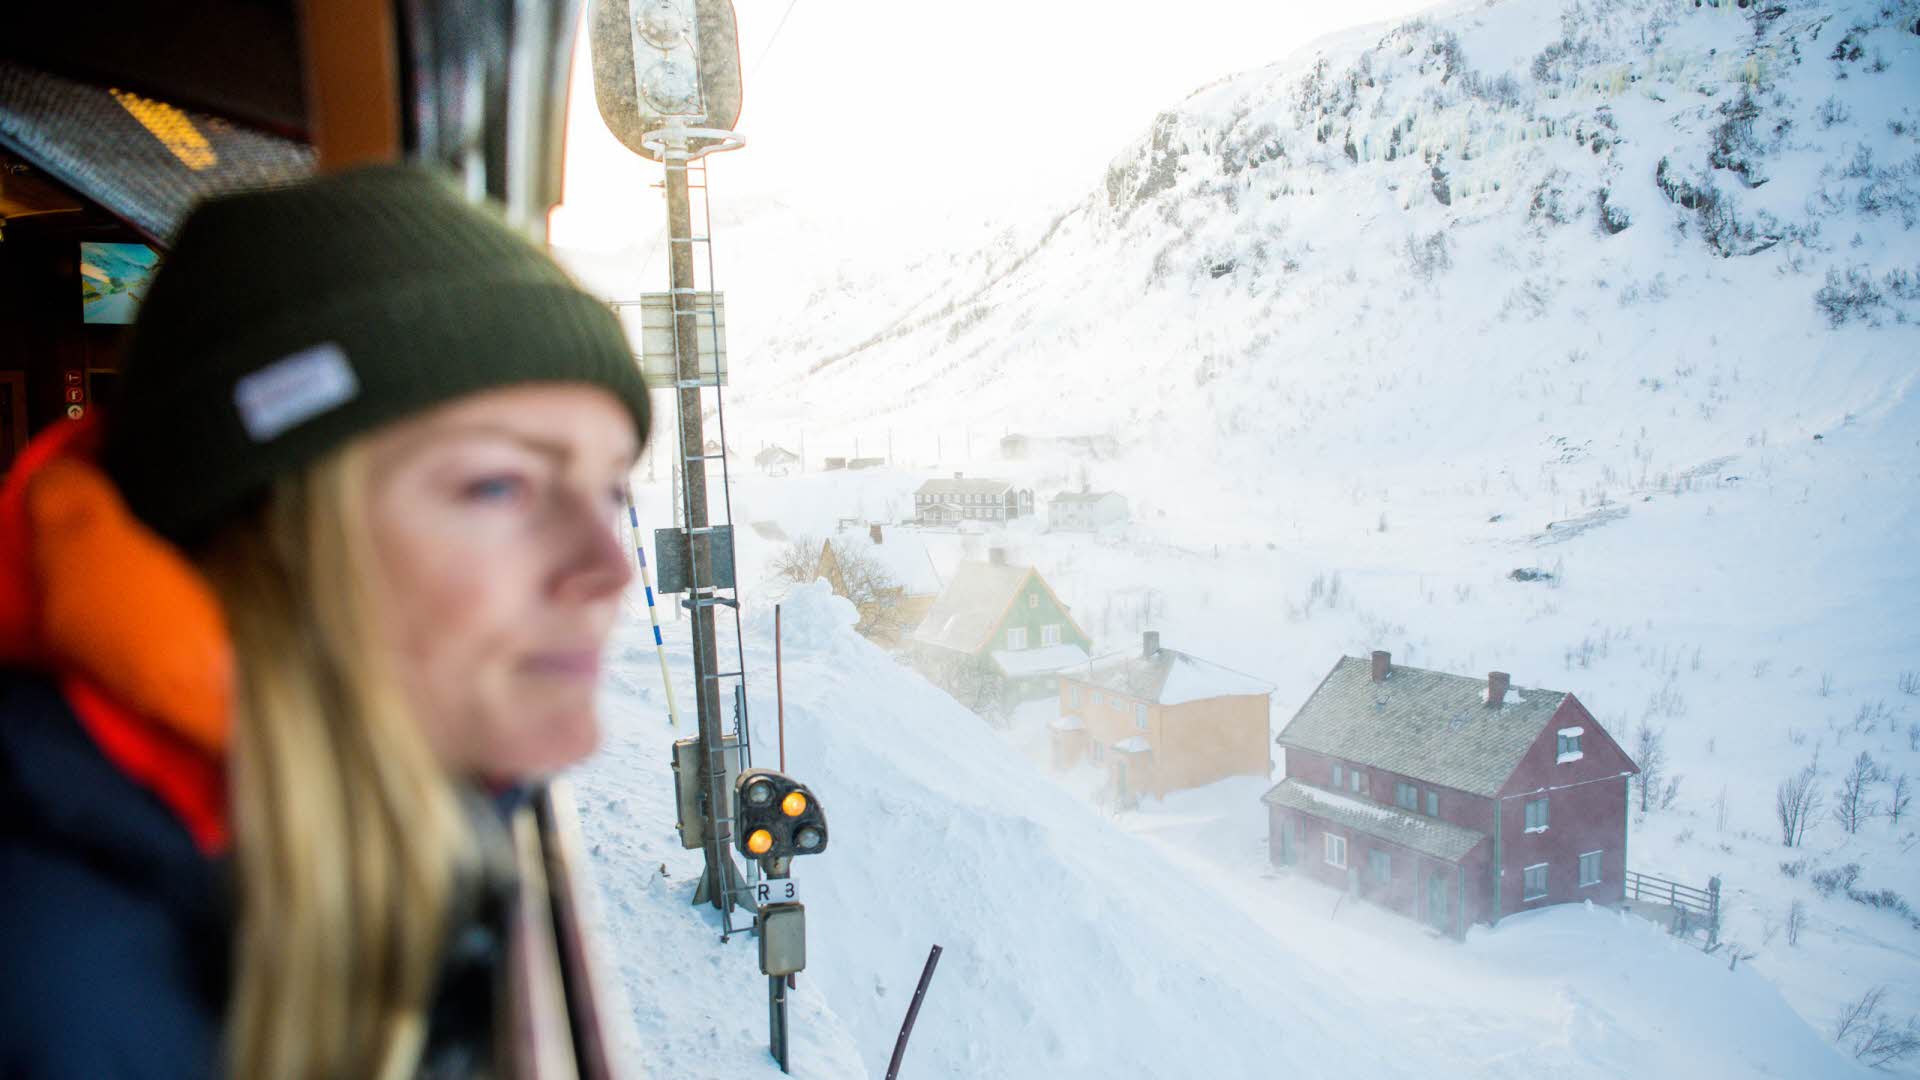 Une femme coiffée d’un bonnet regardant le paysage hivernal par la fenêtre du train de Flåm, en direction des maisons bordant le chemin de fer.